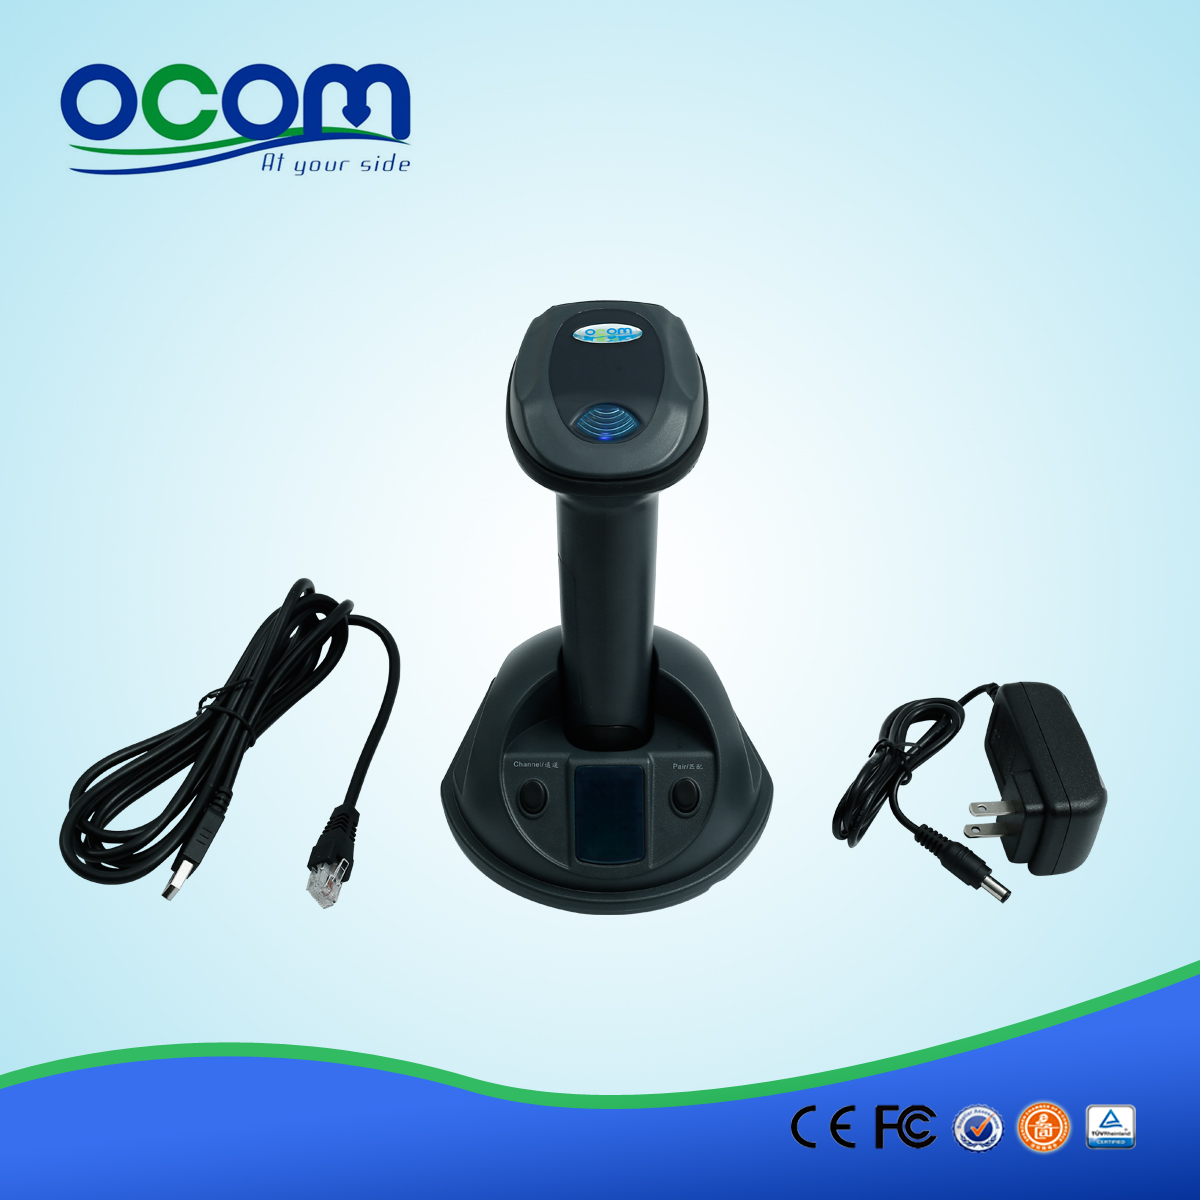 中国制造的433MHz的便携式无线存储器扫描器OCBS-W800